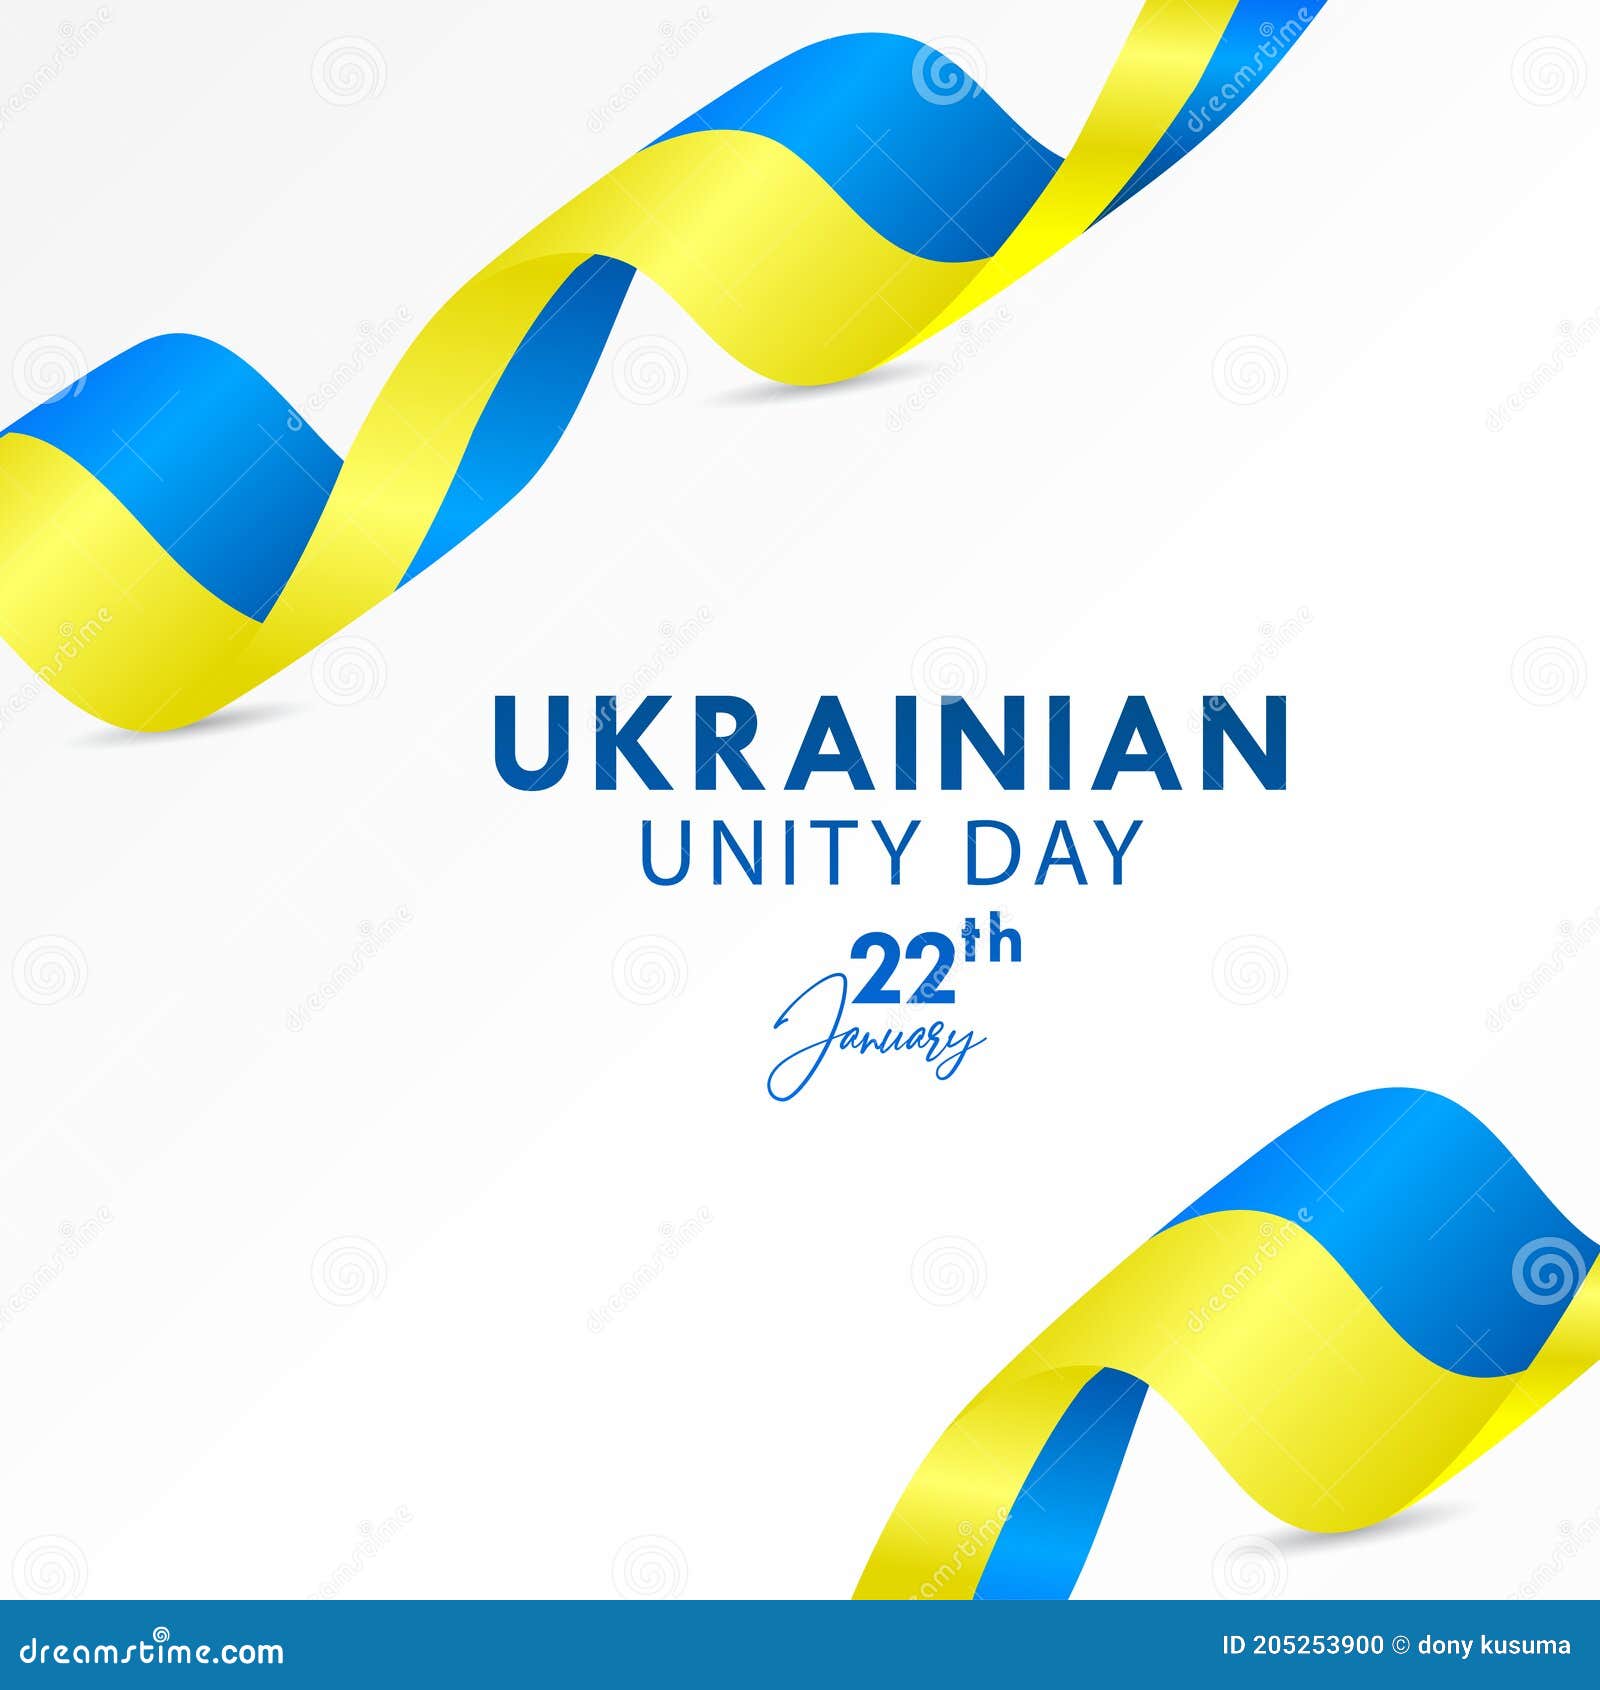 Ngày Thống nhất Ukraina - Ngày kỉ niệm đánh dấu sự hiệp nhất Ukraina với một tinh thần đoàn kết và toàn vẹn. Hãy khám phá hình ảnh đầy cảm xúc của ngày này!